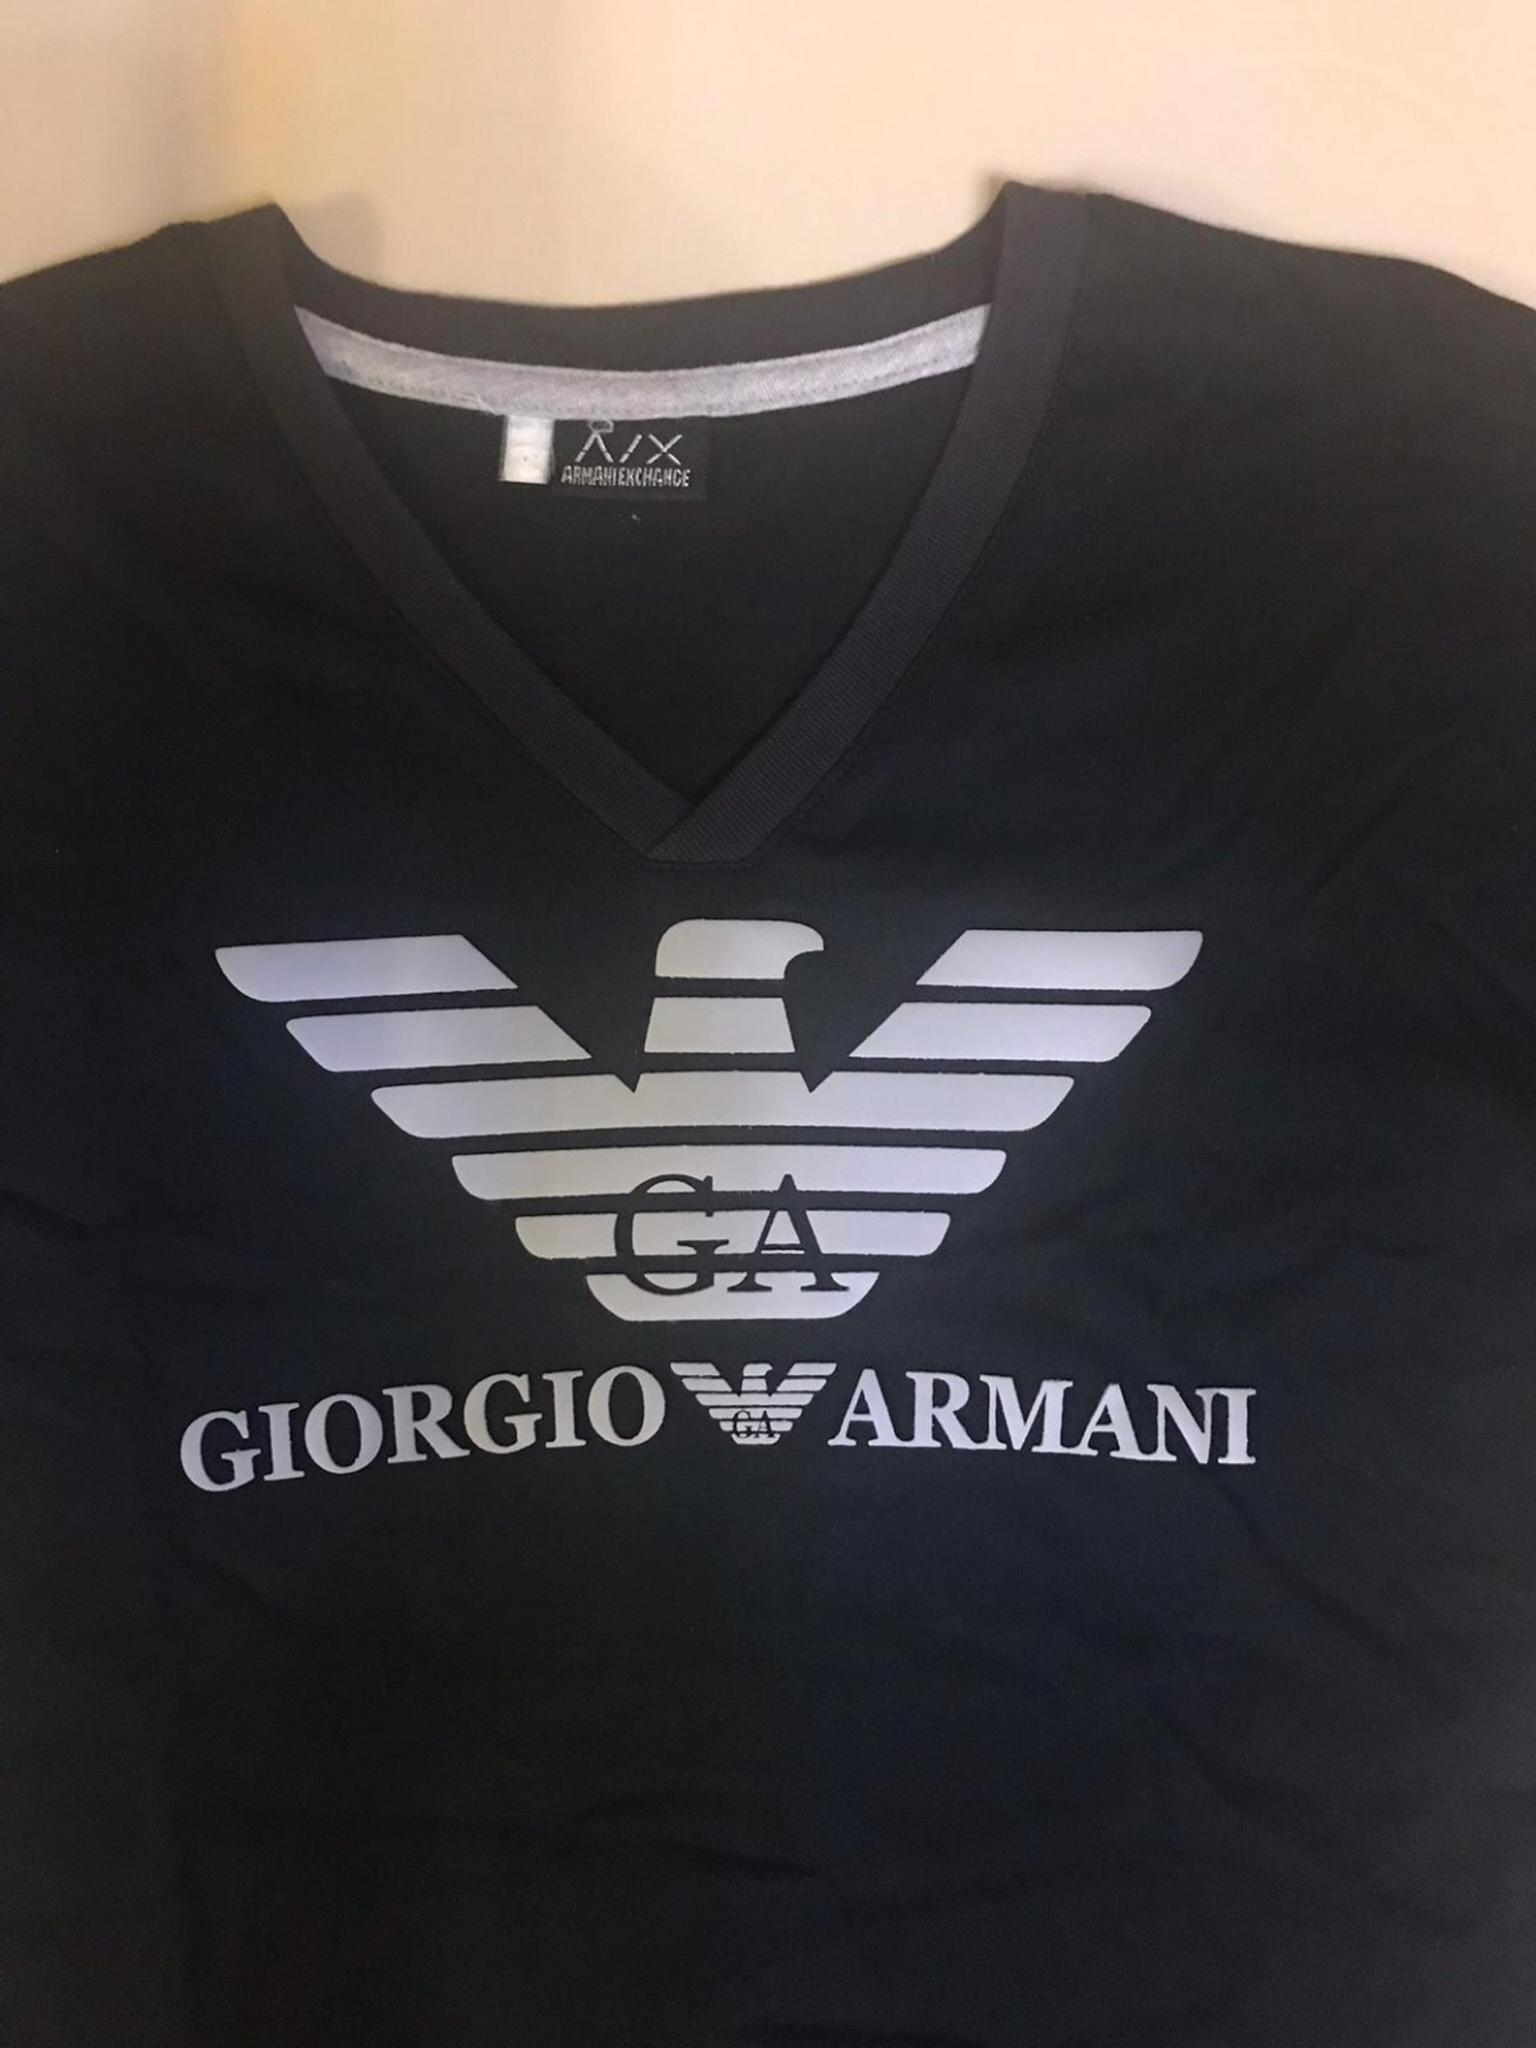 giorgio armani t-shirt